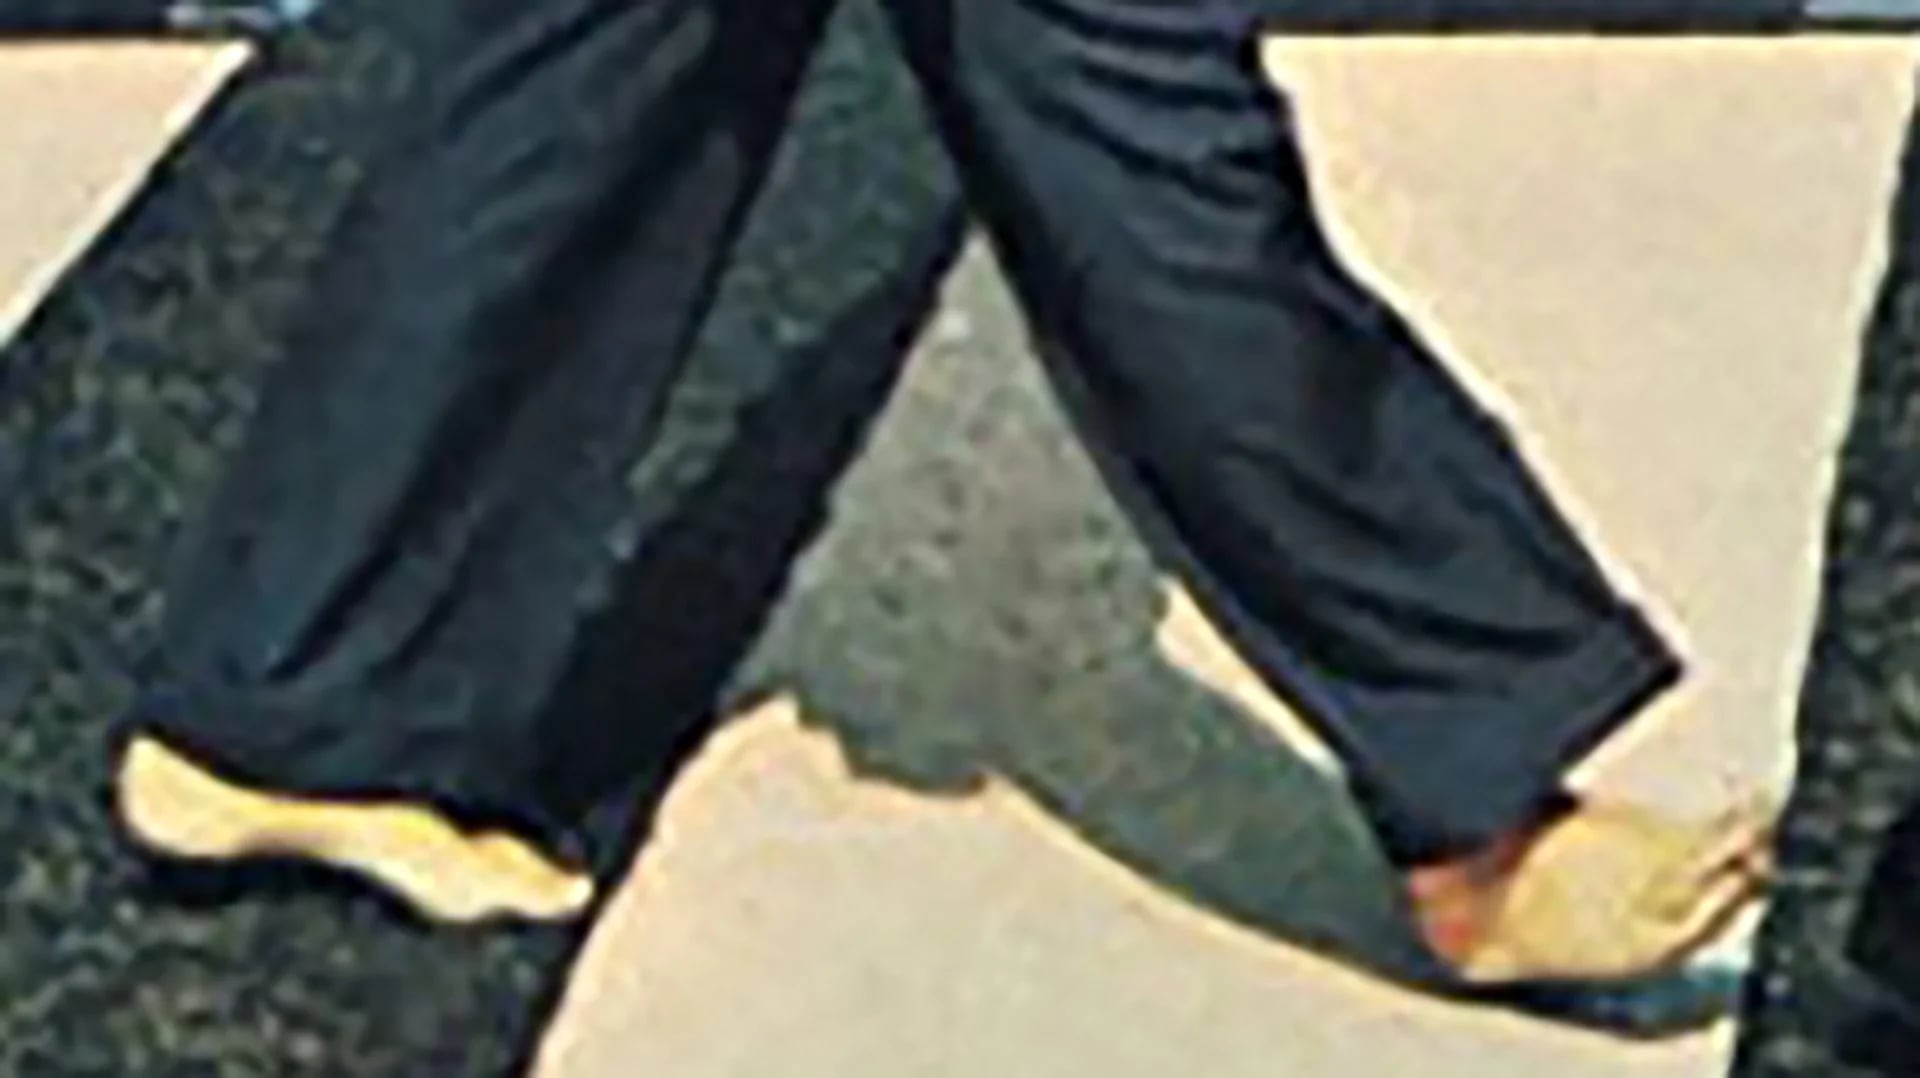 Los pies descalzos de Paul en la portada del disco fueron la piedra fundamental de las teorías